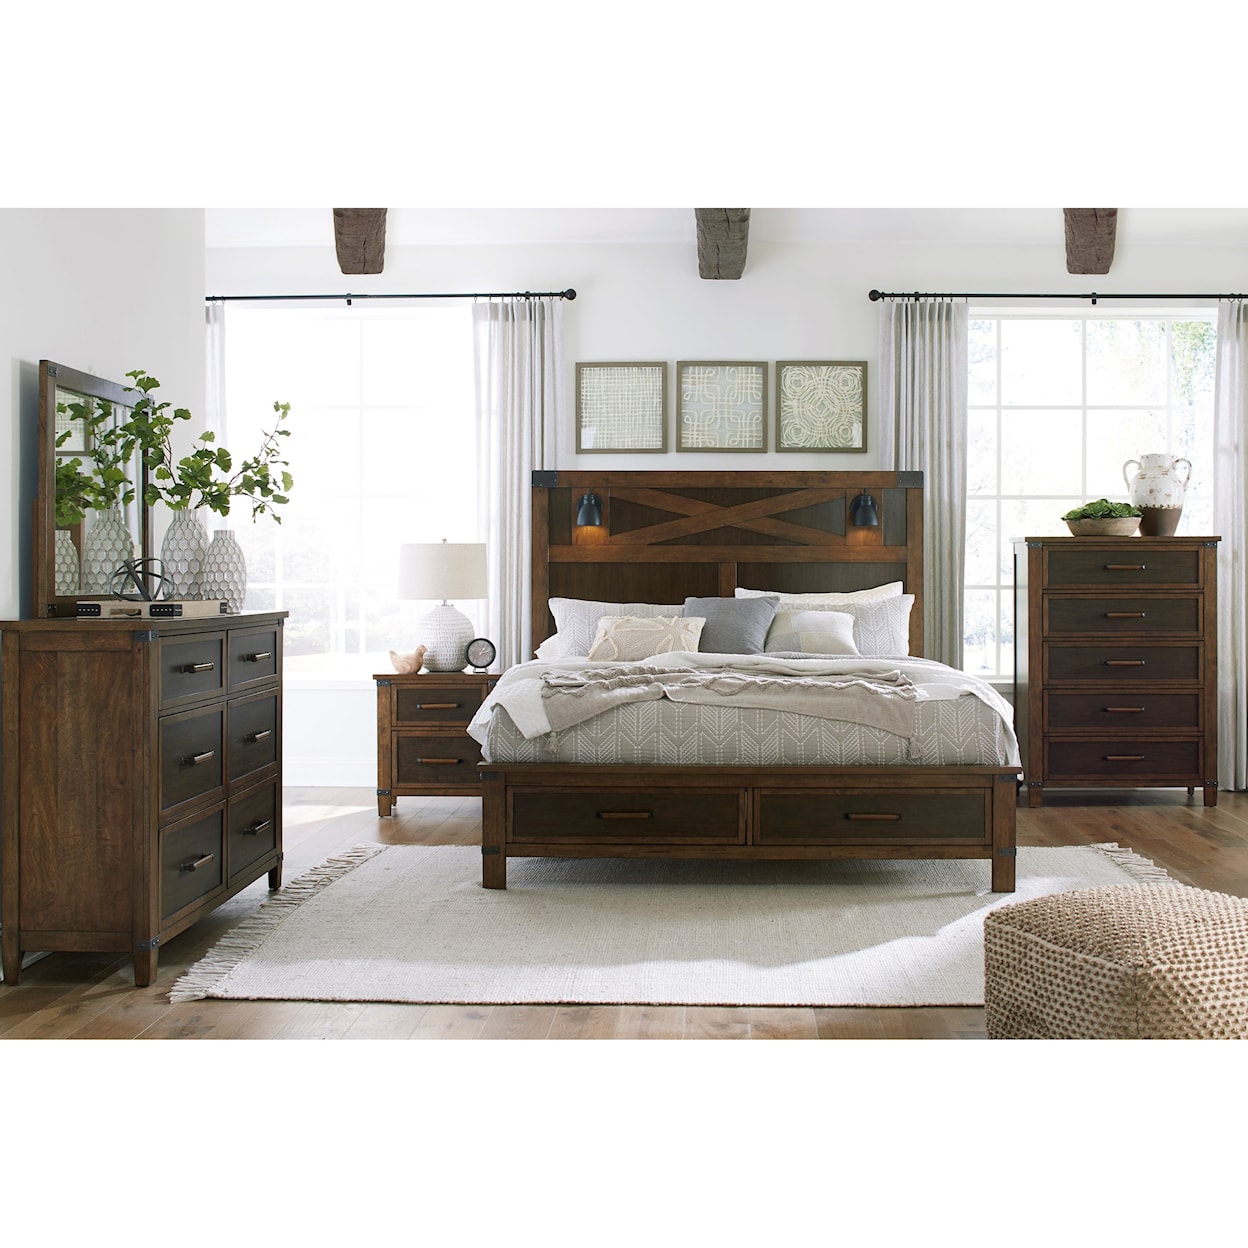 Ashley Furniture Benchcraft Wyattfield Dresser & Bedroom Mirror